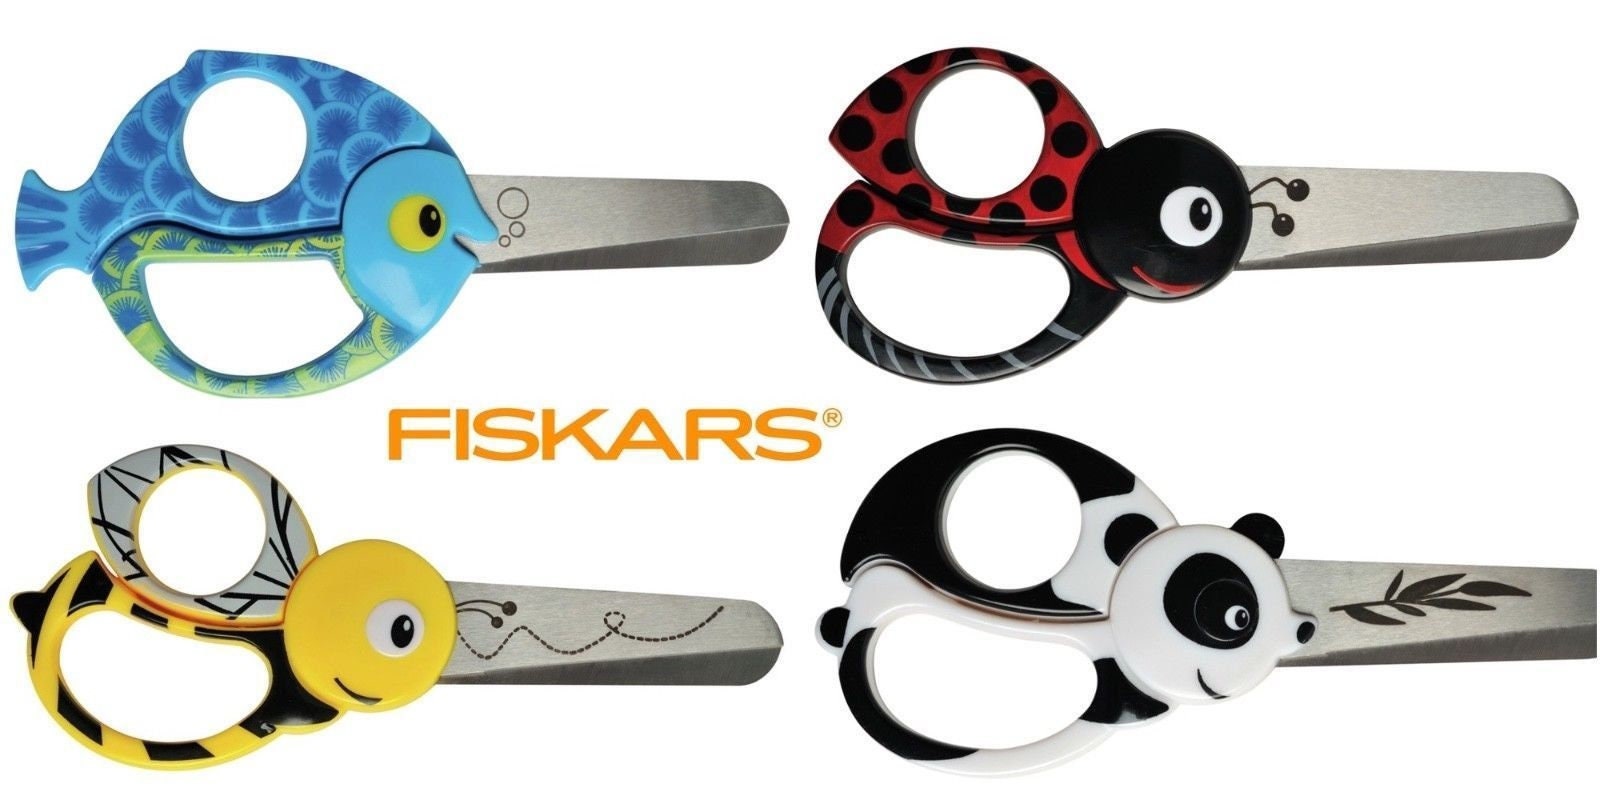 Fiskars Explore Collection Metallic Scissors - Teal - 8 in